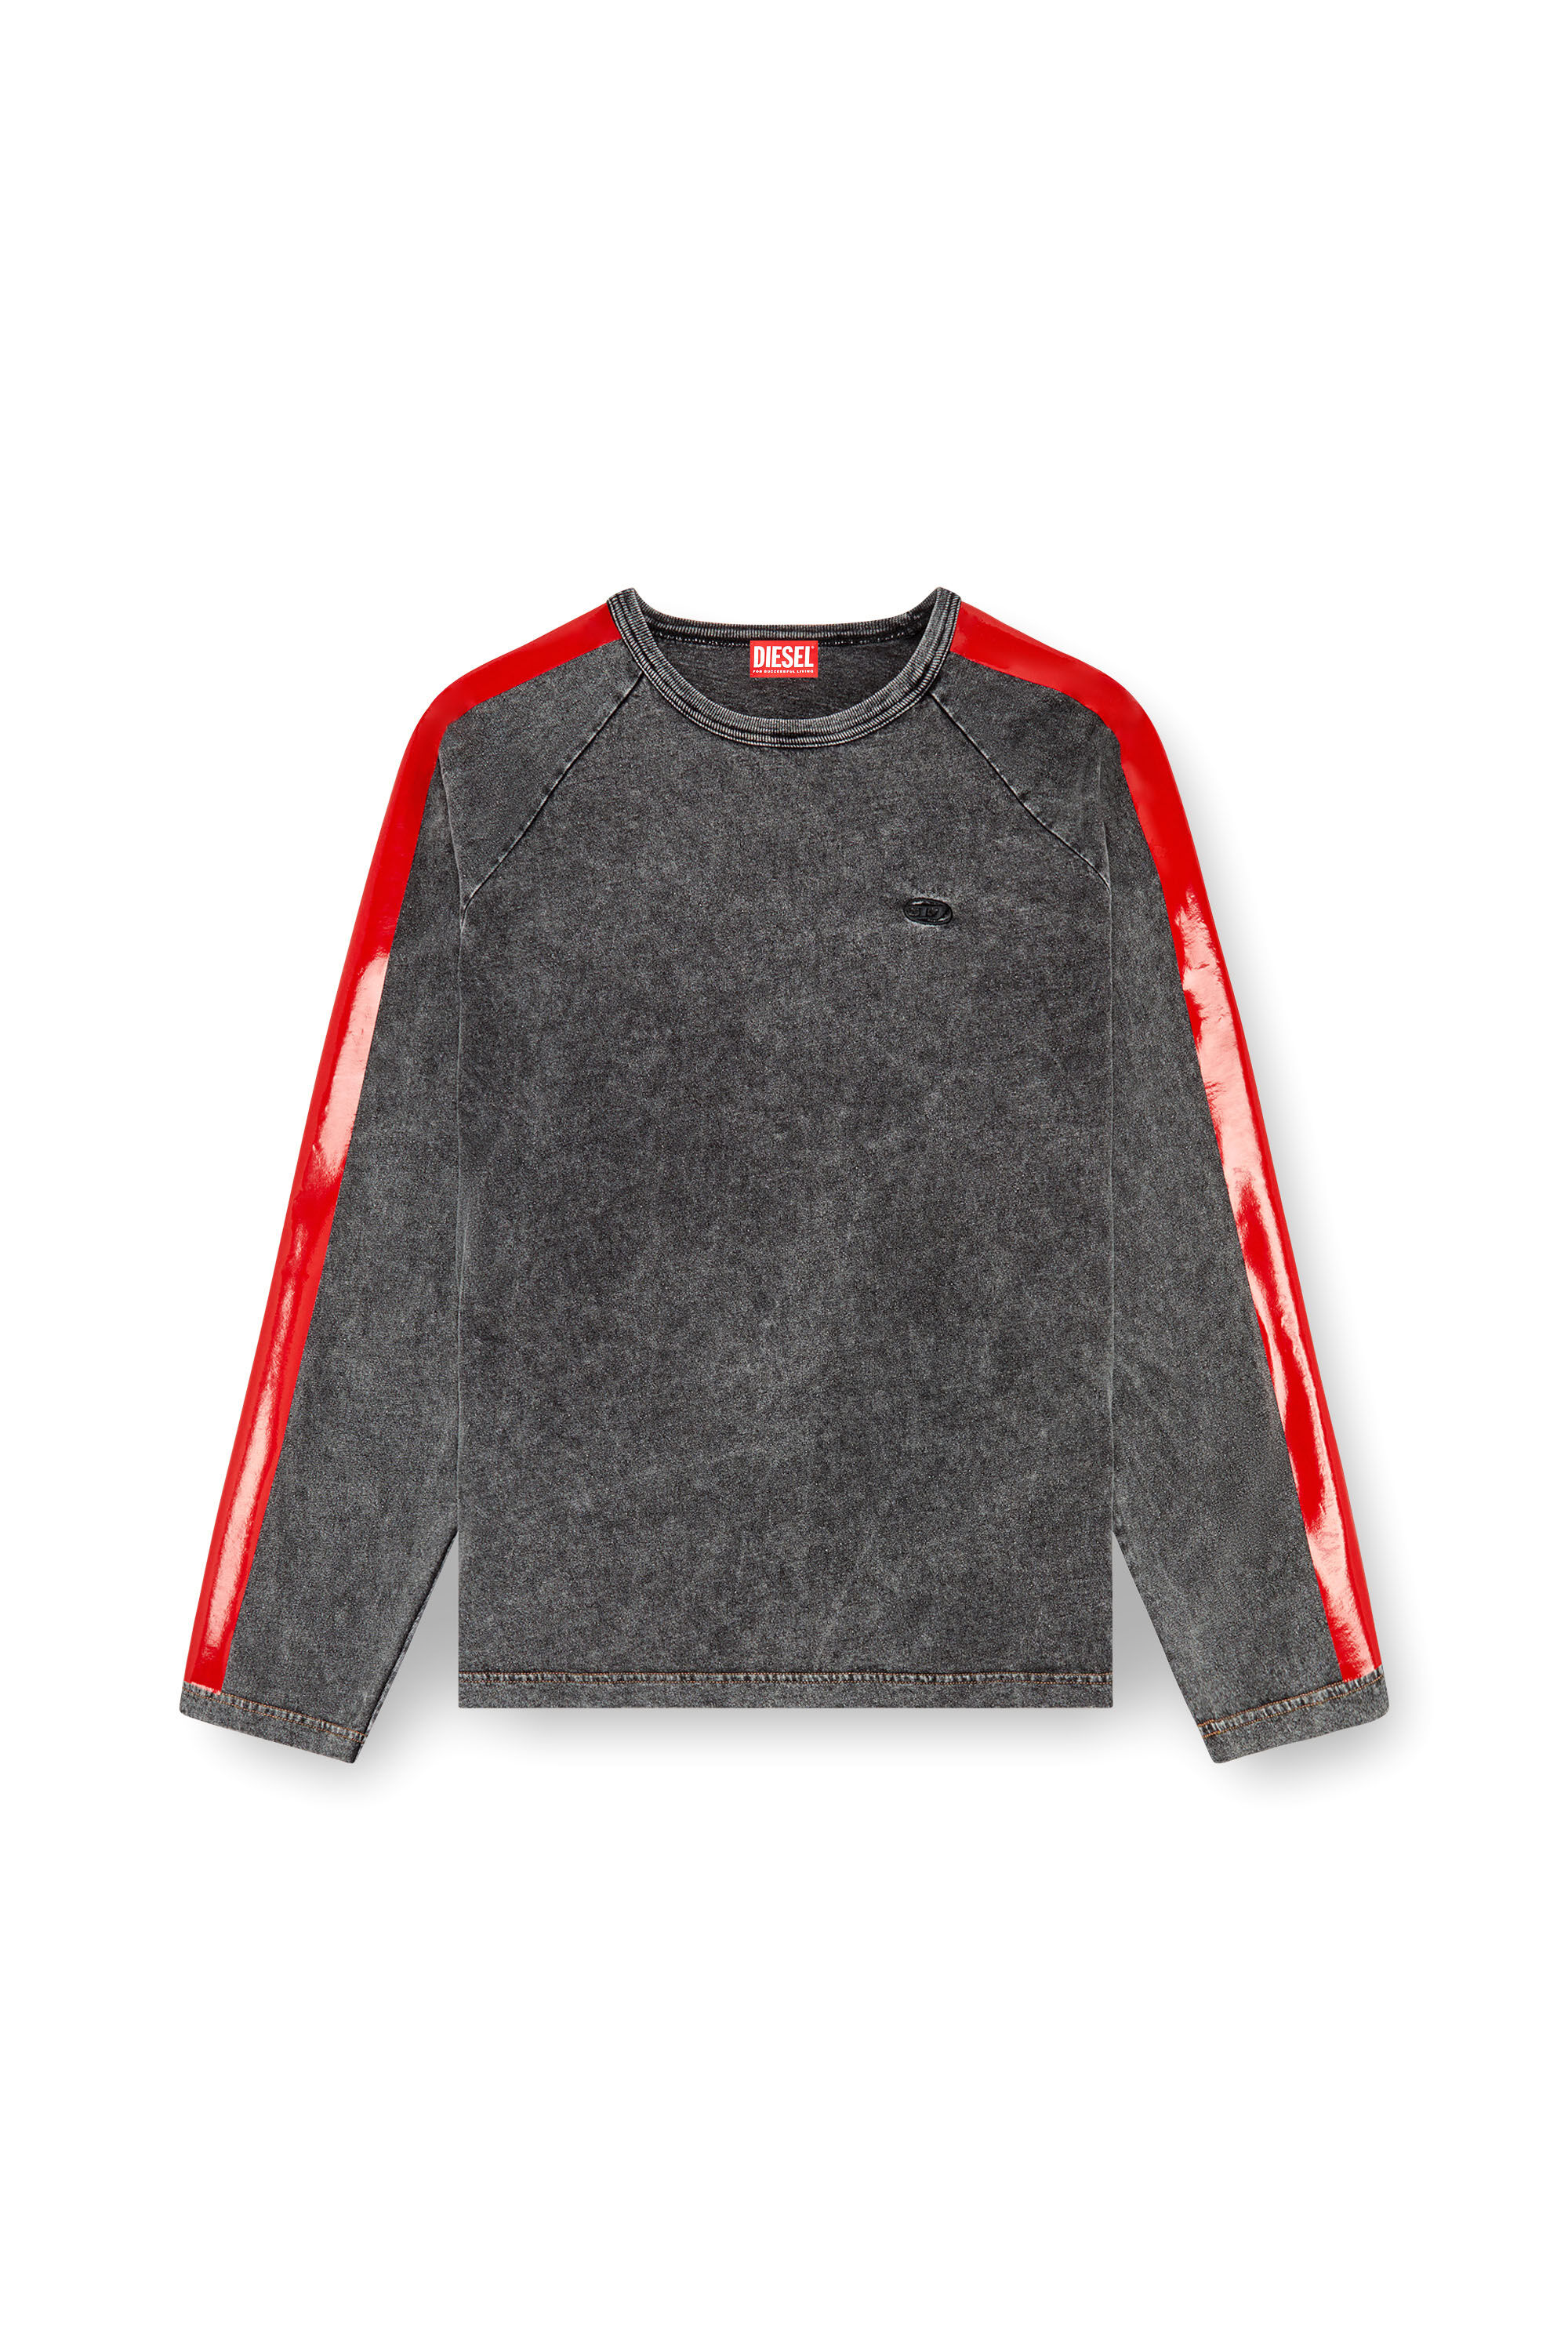 Diesel - T-REDROXT, Homme T-shirt à manches longues avec bandes brillantes in Noir - Image 2